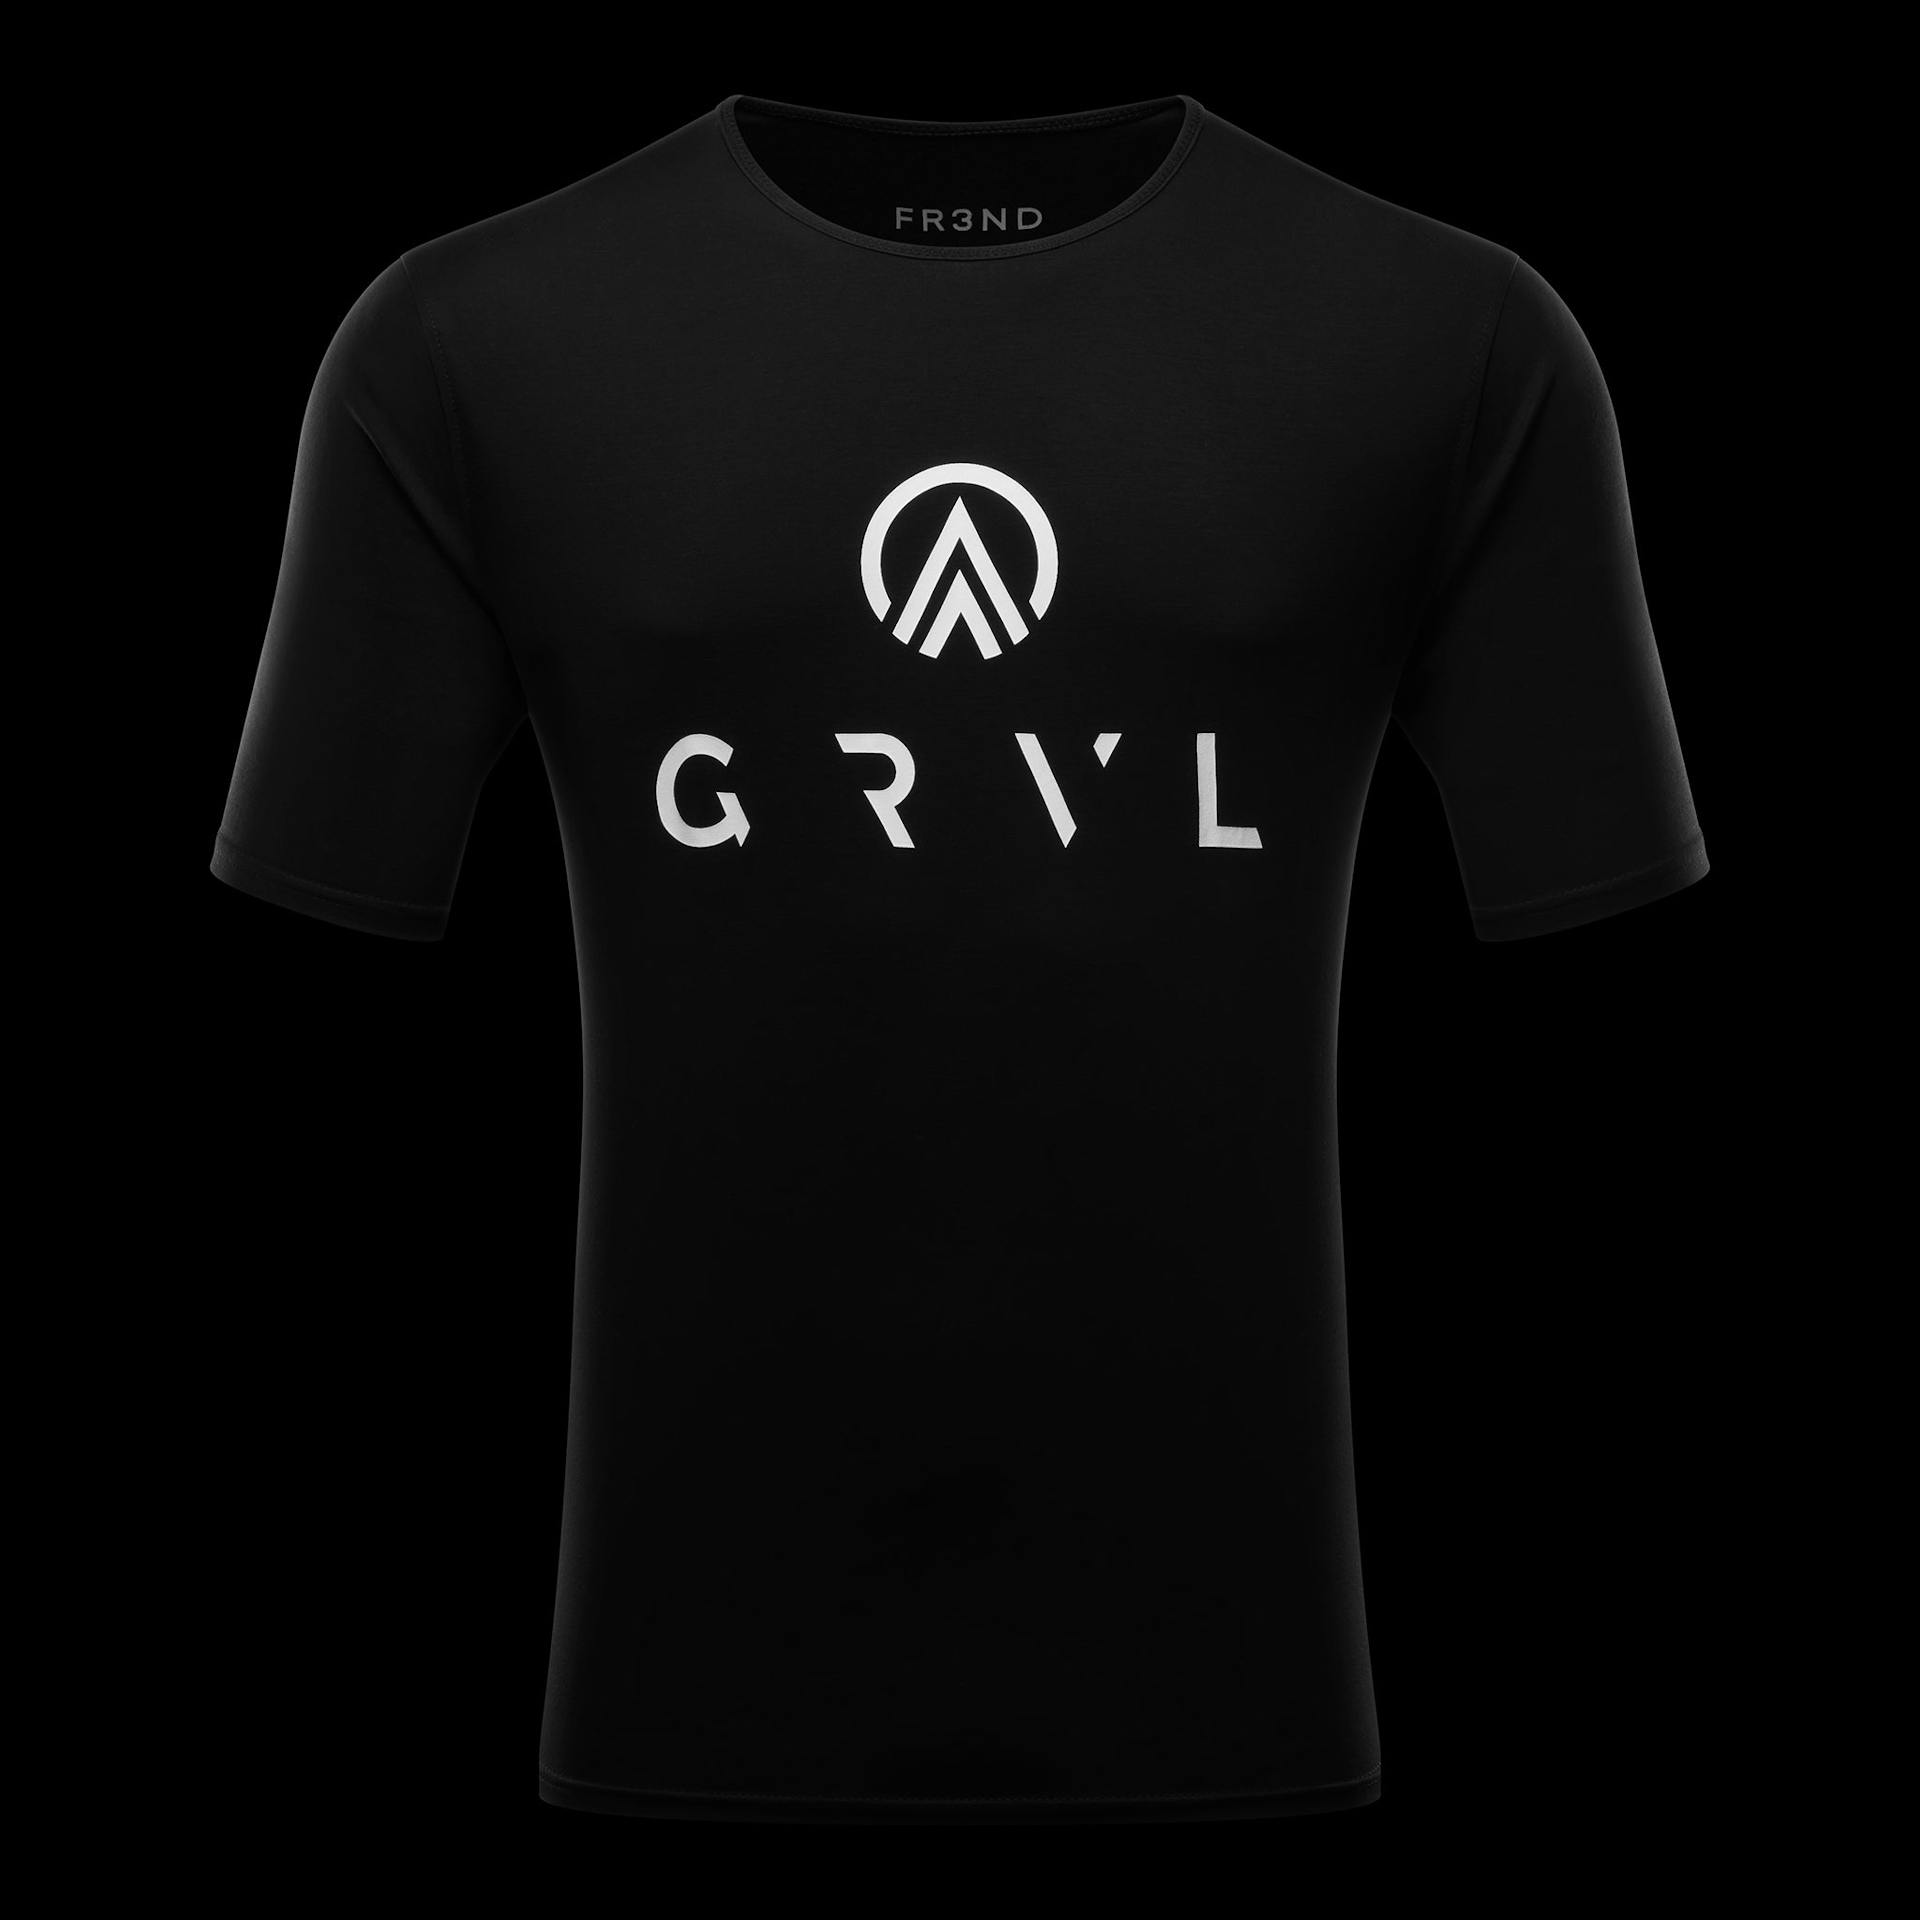 T-Shirt - Black - GRVL  X  FR3ND